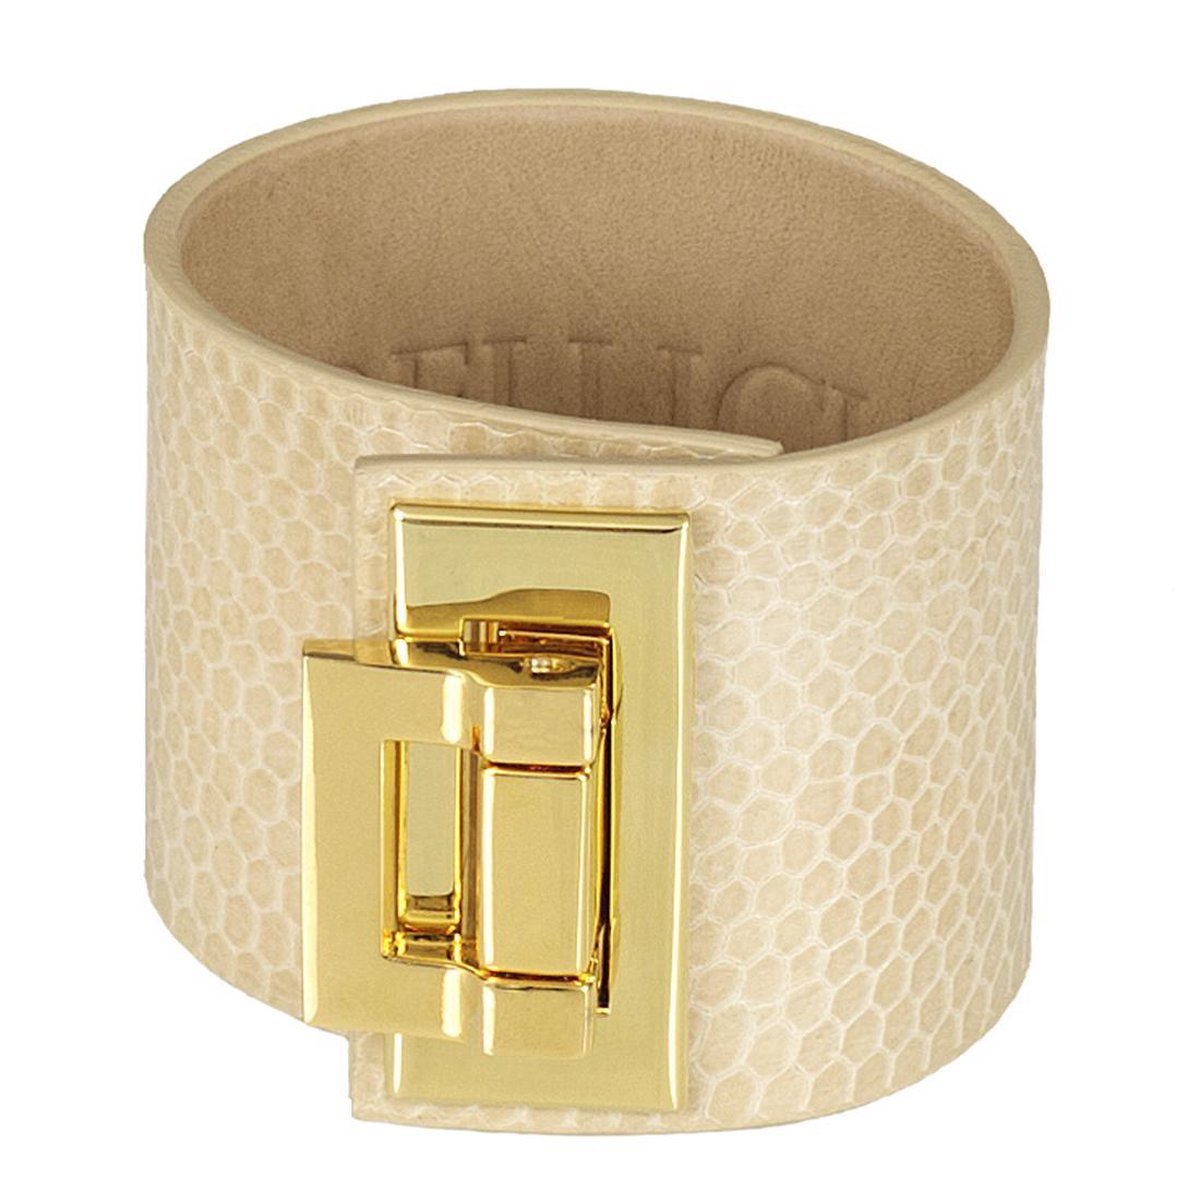 BELUCIA dames armband ZK-02 kalfsleer shiny beige, goudkleurig, maat 17 cm